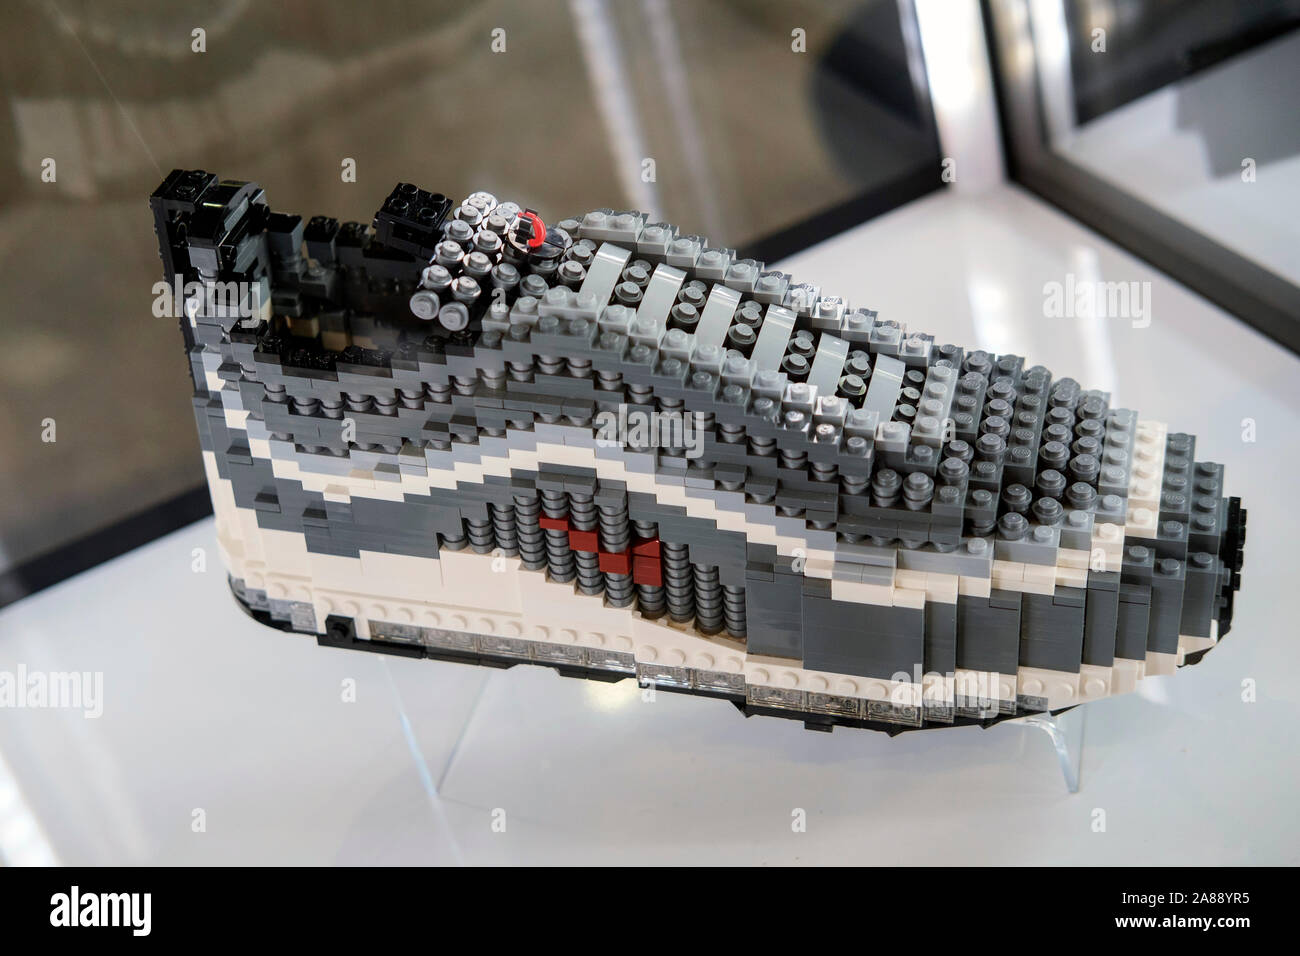 افضل مكينة قهوة Nike chaussures iconique avec pièces en plastique Lego exposée au ... افضل مكينة قهوة